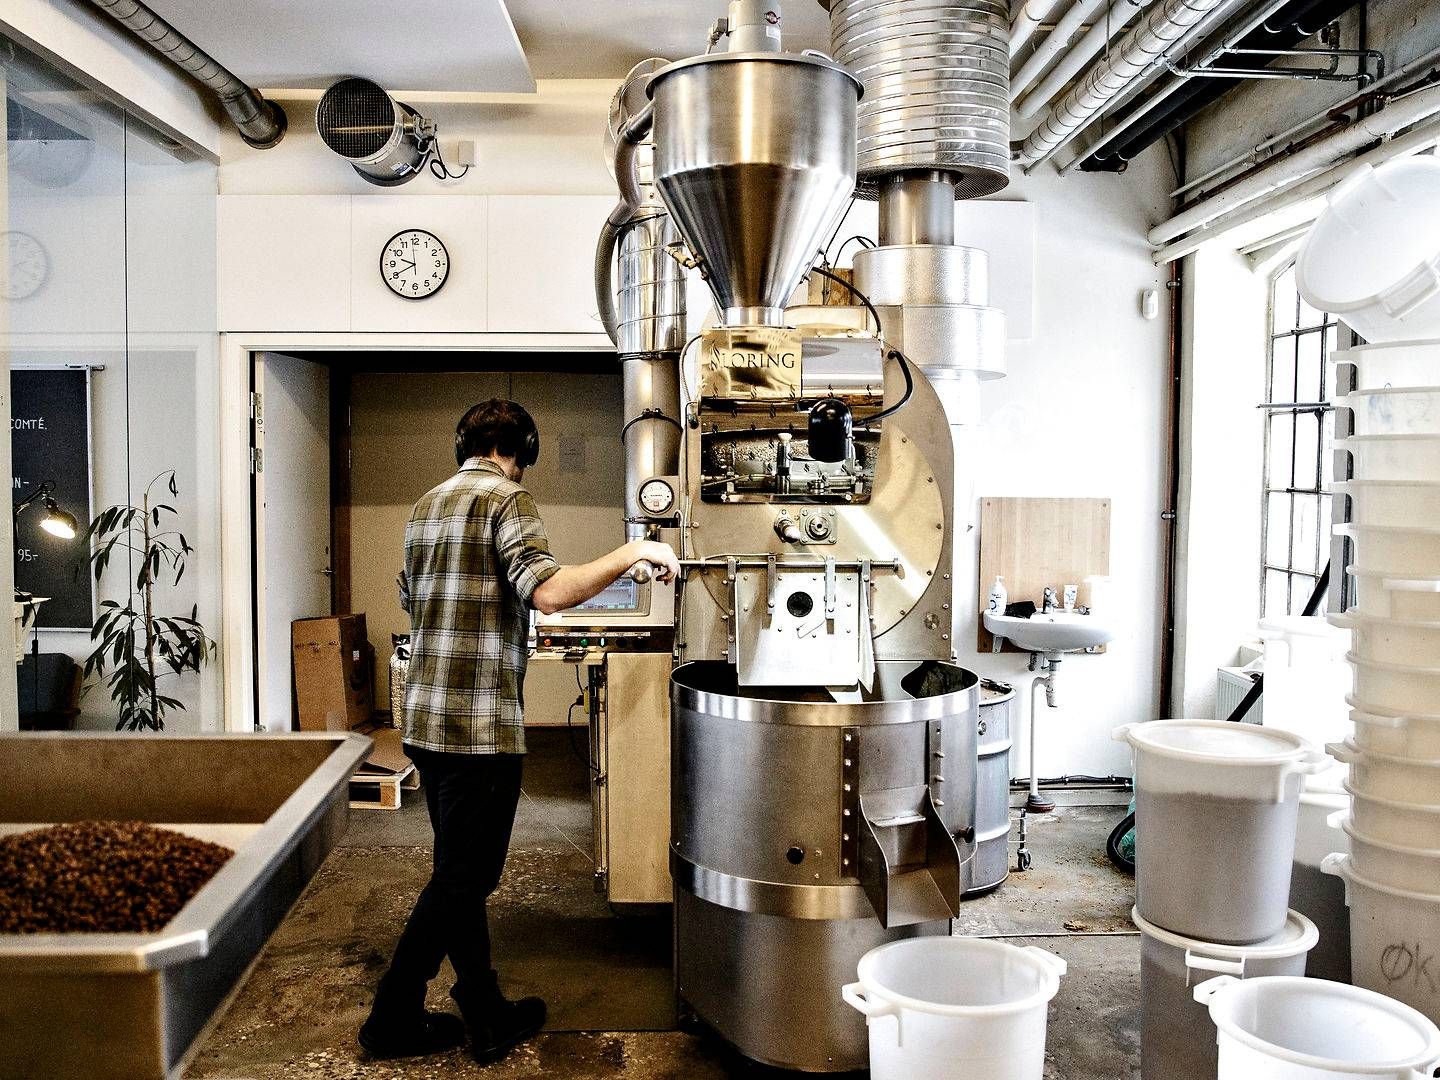 The Coffee Collective har fire kaffebarer samt eget risteri med engrossalg til ind- og udland. Selskabet har desuden en ambition om at åbne en ny kaffebar om året. | Foto: Miriam Dalsgaard/Politiken/Ritzau Scanpix